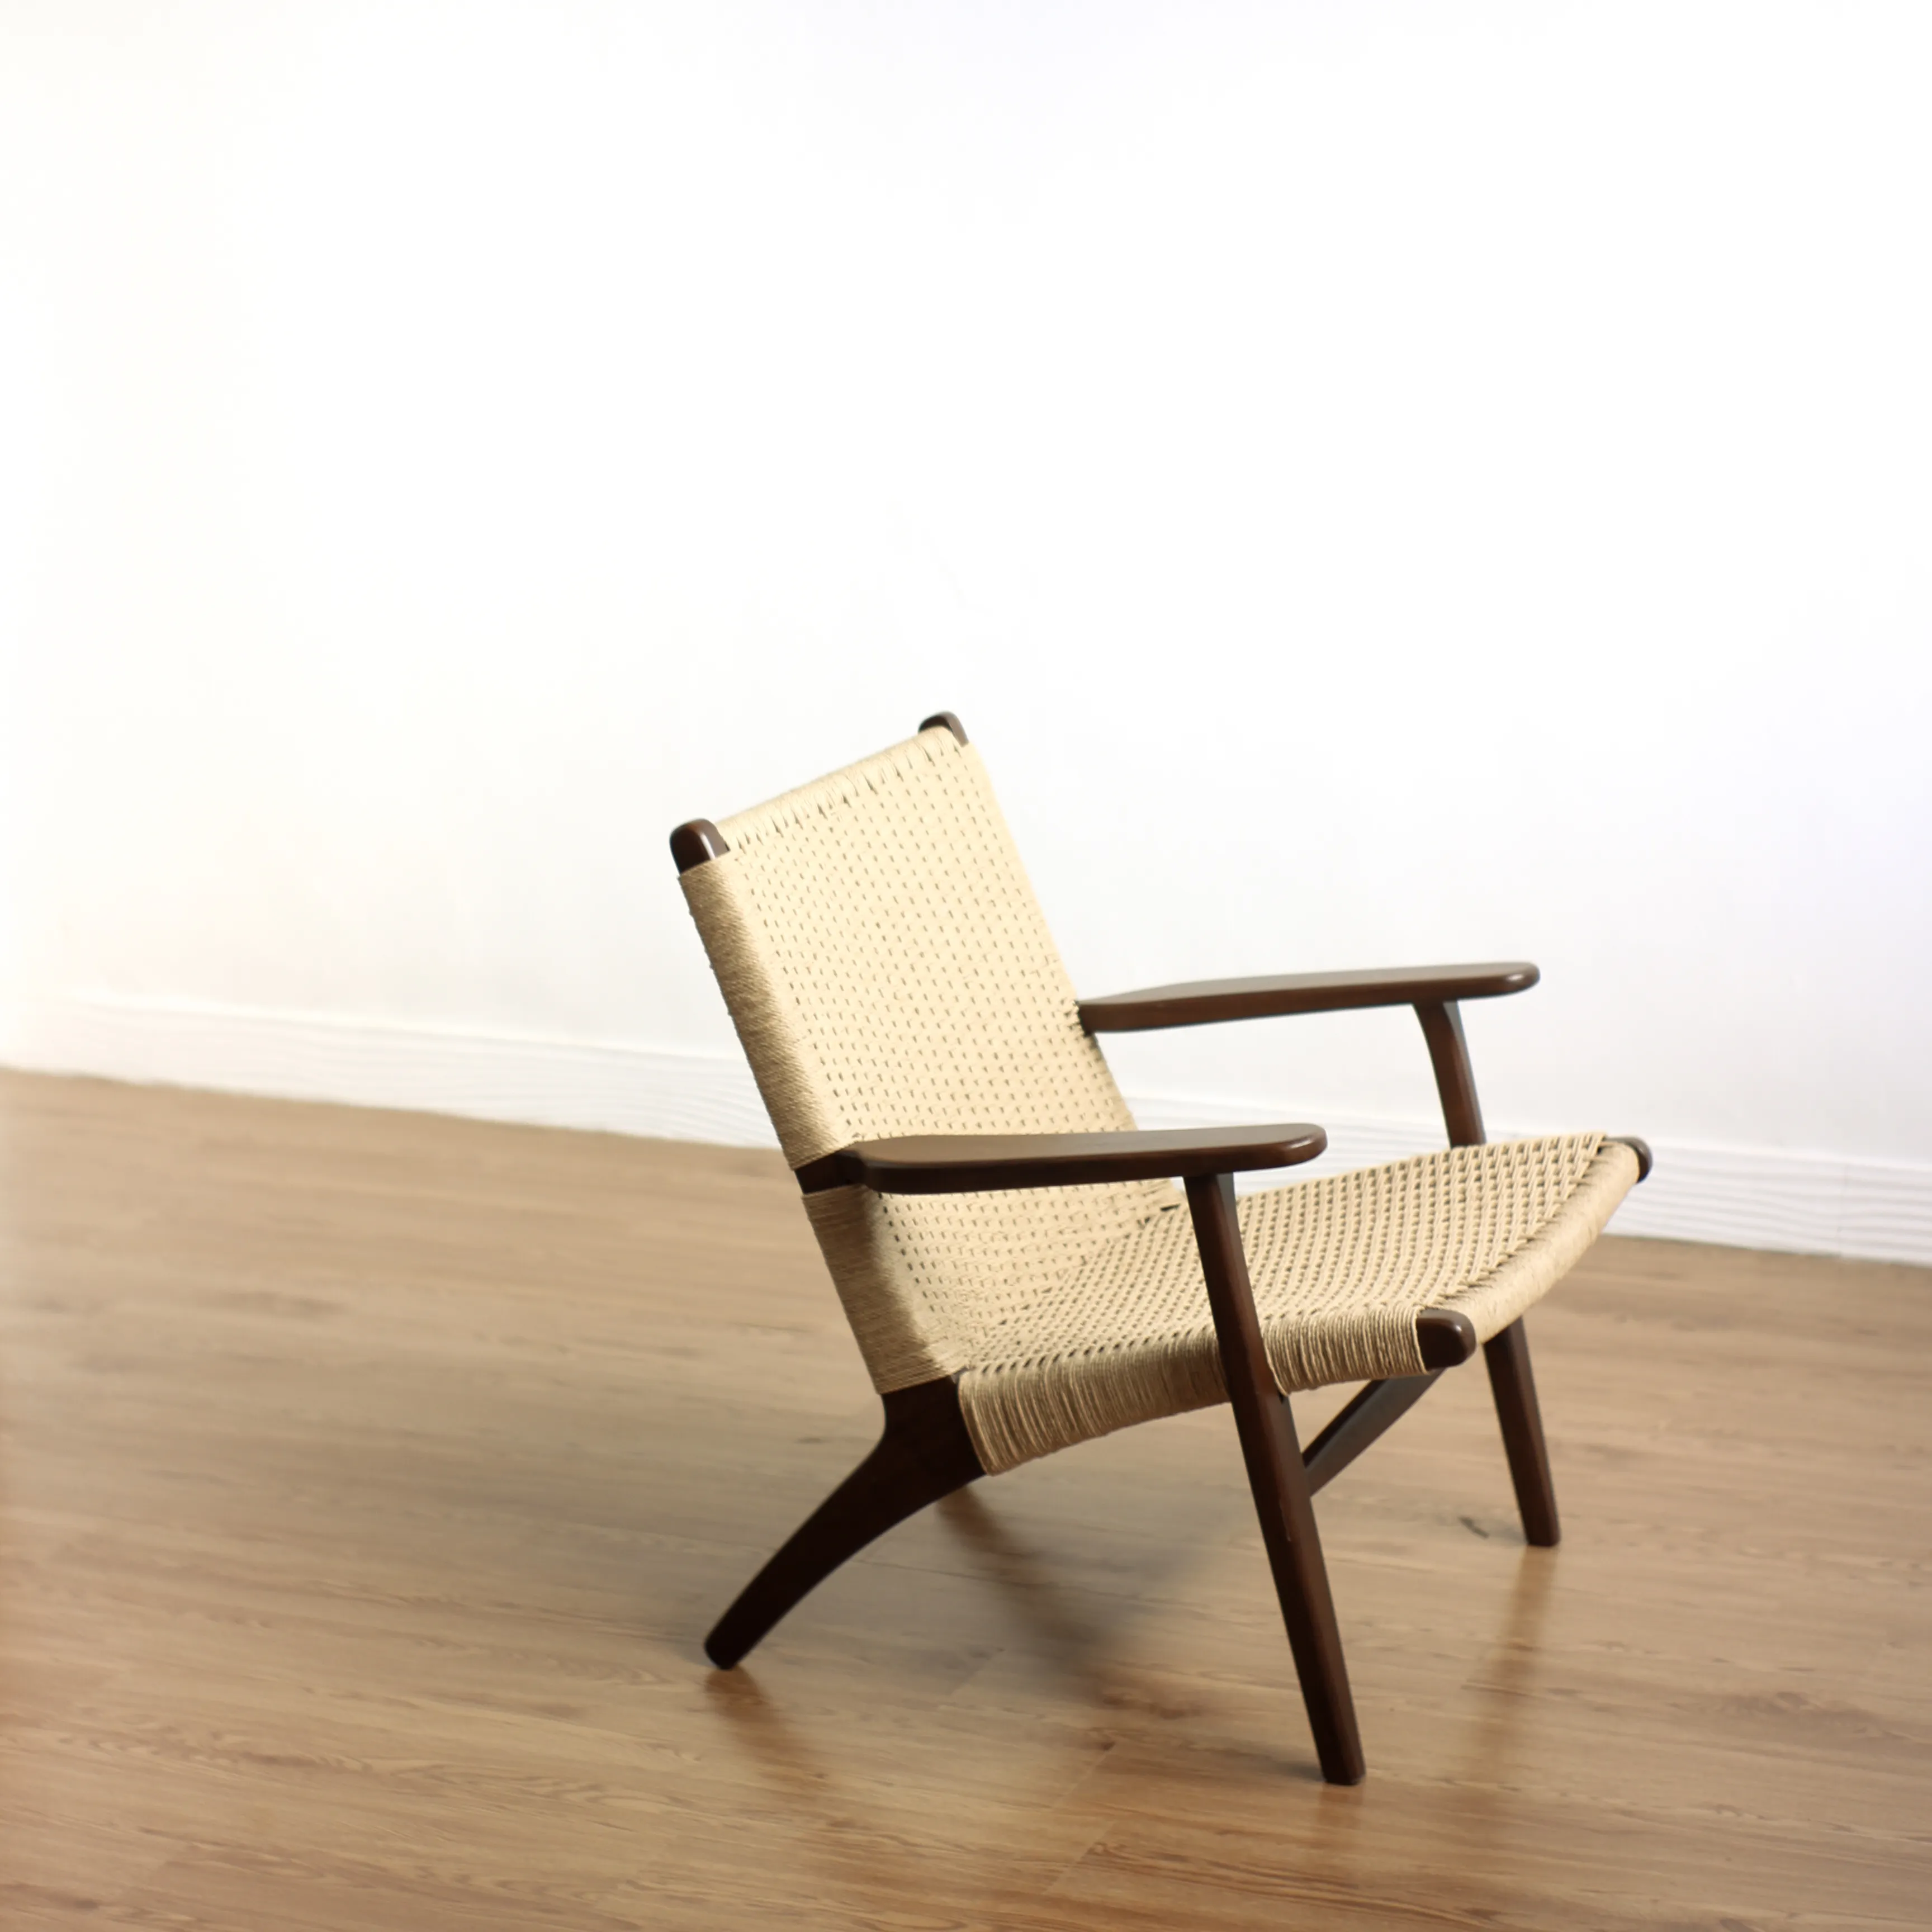 Mobili in legno di TEAK accento sedia poltrona soggiorno moderno lusso RATTAN naturale combinazione